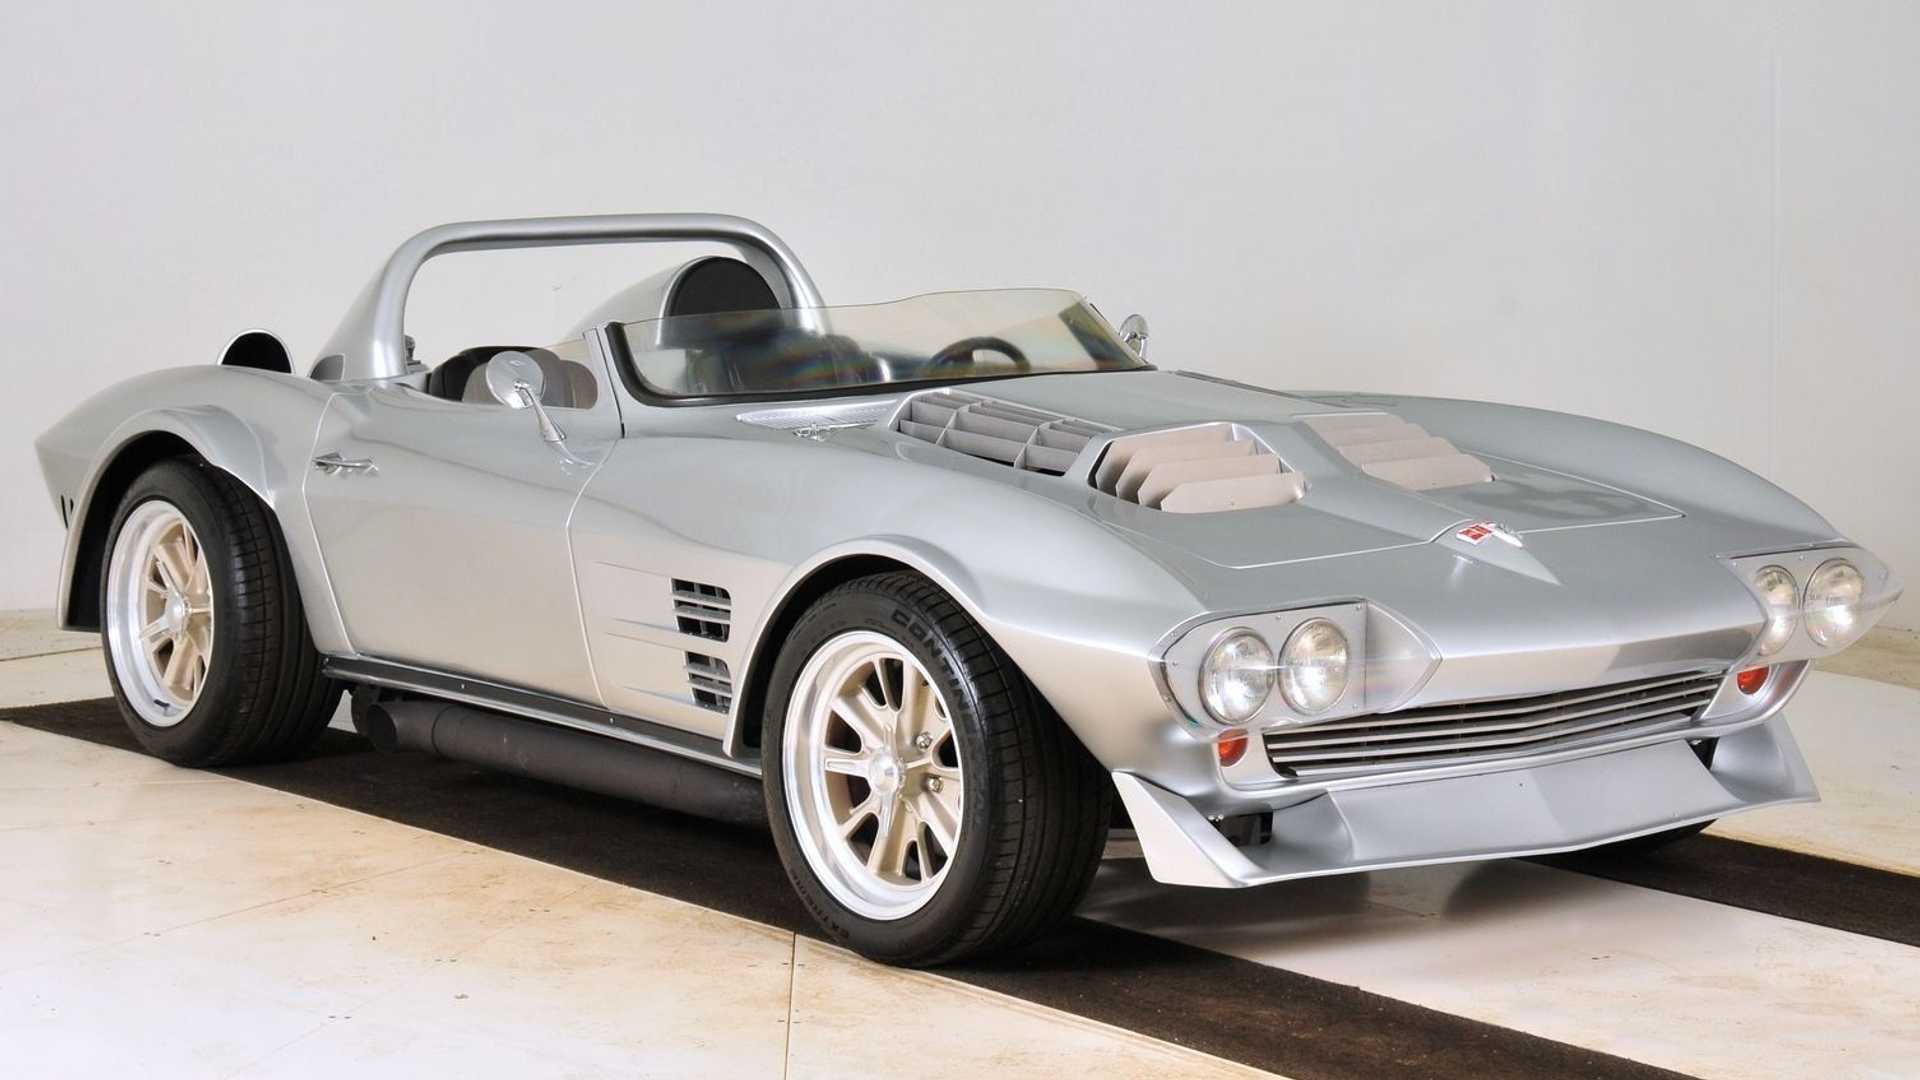 Копии Chevrolet Corvette Grand Sport 1963 года по лицензии General Motors выпускает фирма Mongoose Motorsports